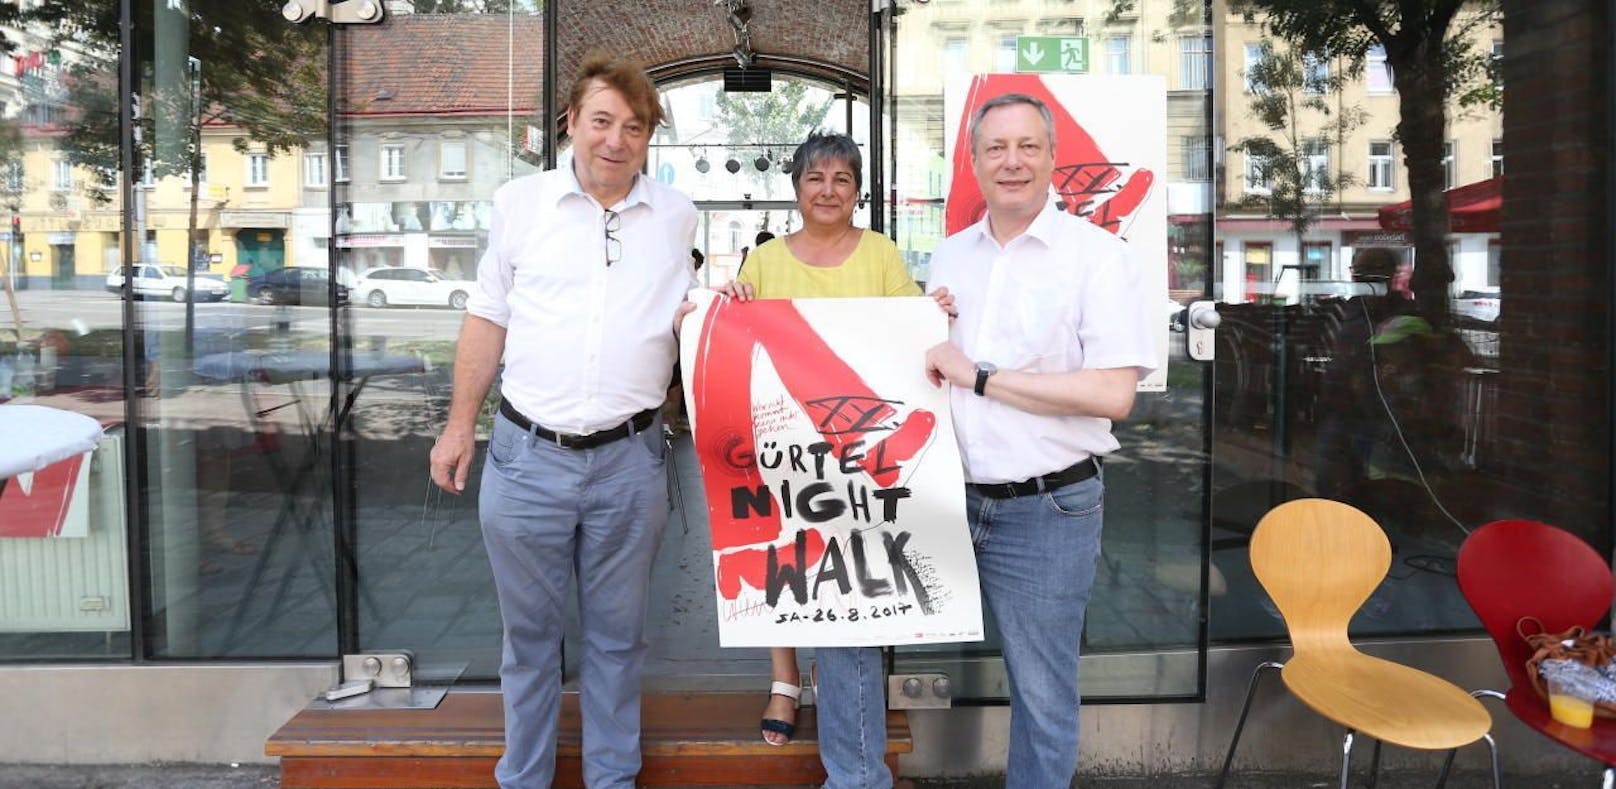 Gürtel-Nightwalk: Die Organisatoren Kurt Stürzenbecher, Nurten Yilmaz und Heinz Vettermann (rechts) präsentierten das Programm für die 20. Ausgabe des Konzertreigens am 26. August.